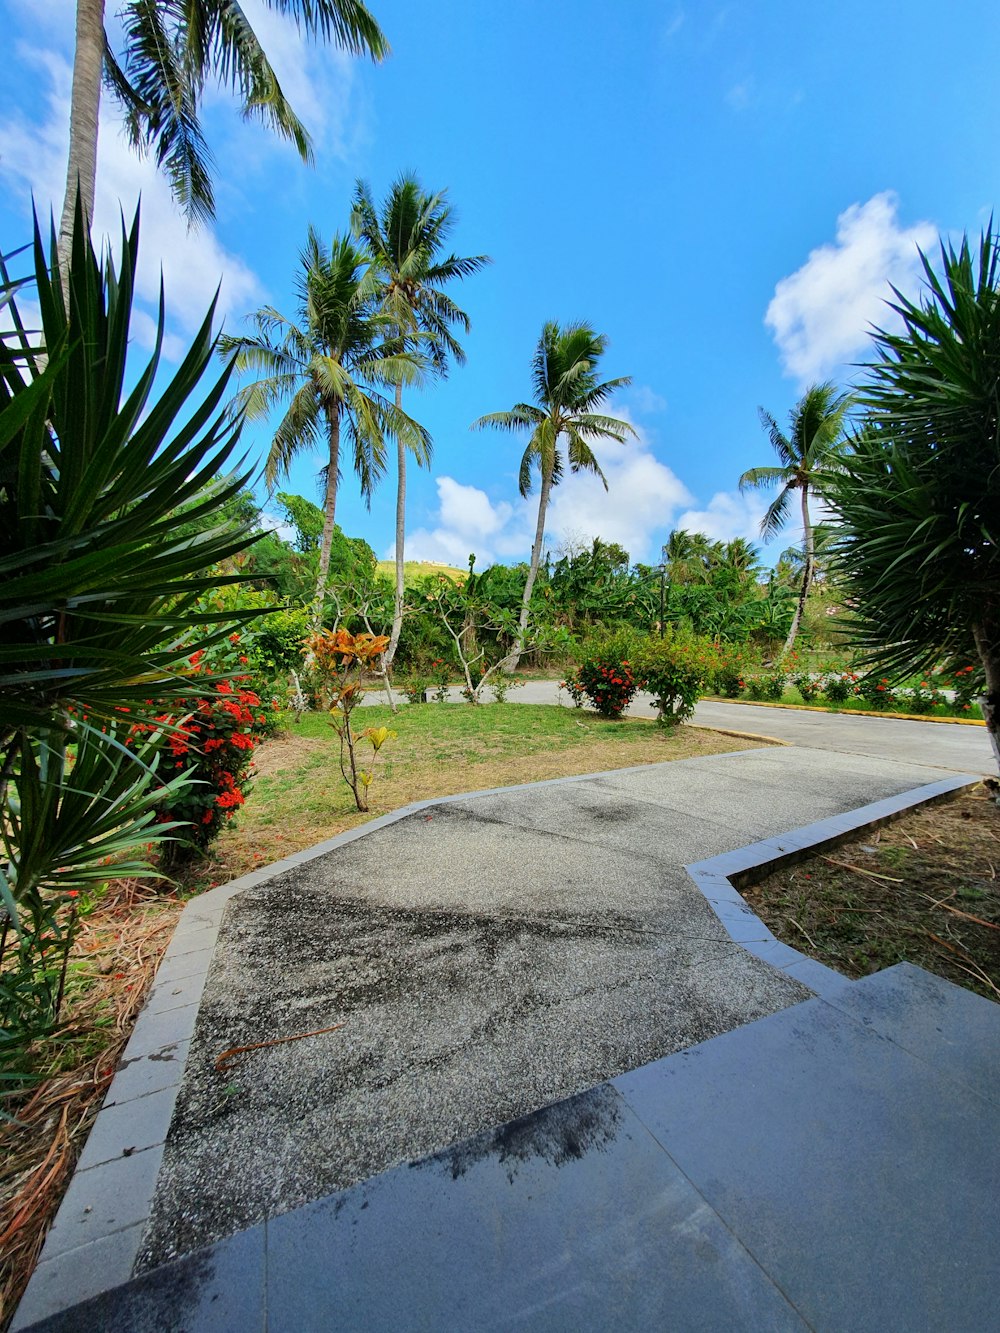 Grüne Palmen in der Nähe von grauem Betonweg unter blauem Himmel tagsüber